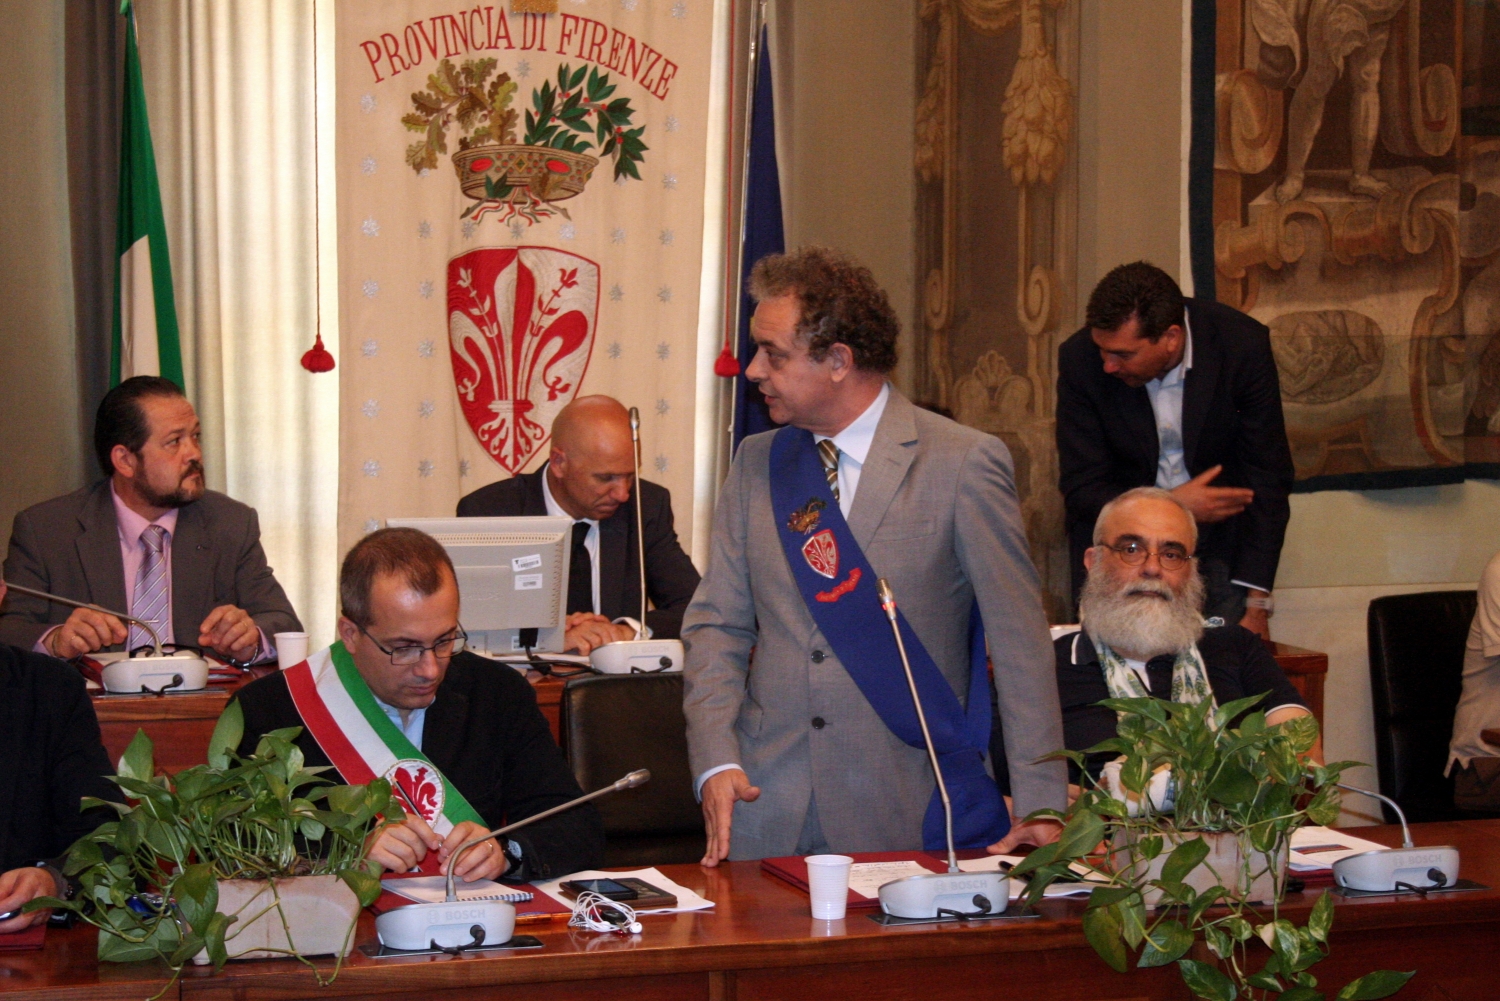 Il presidente Barducci parla all'ultima seduta del Consiglio provinciale di Firenze (foto Antonello Serino - Met)